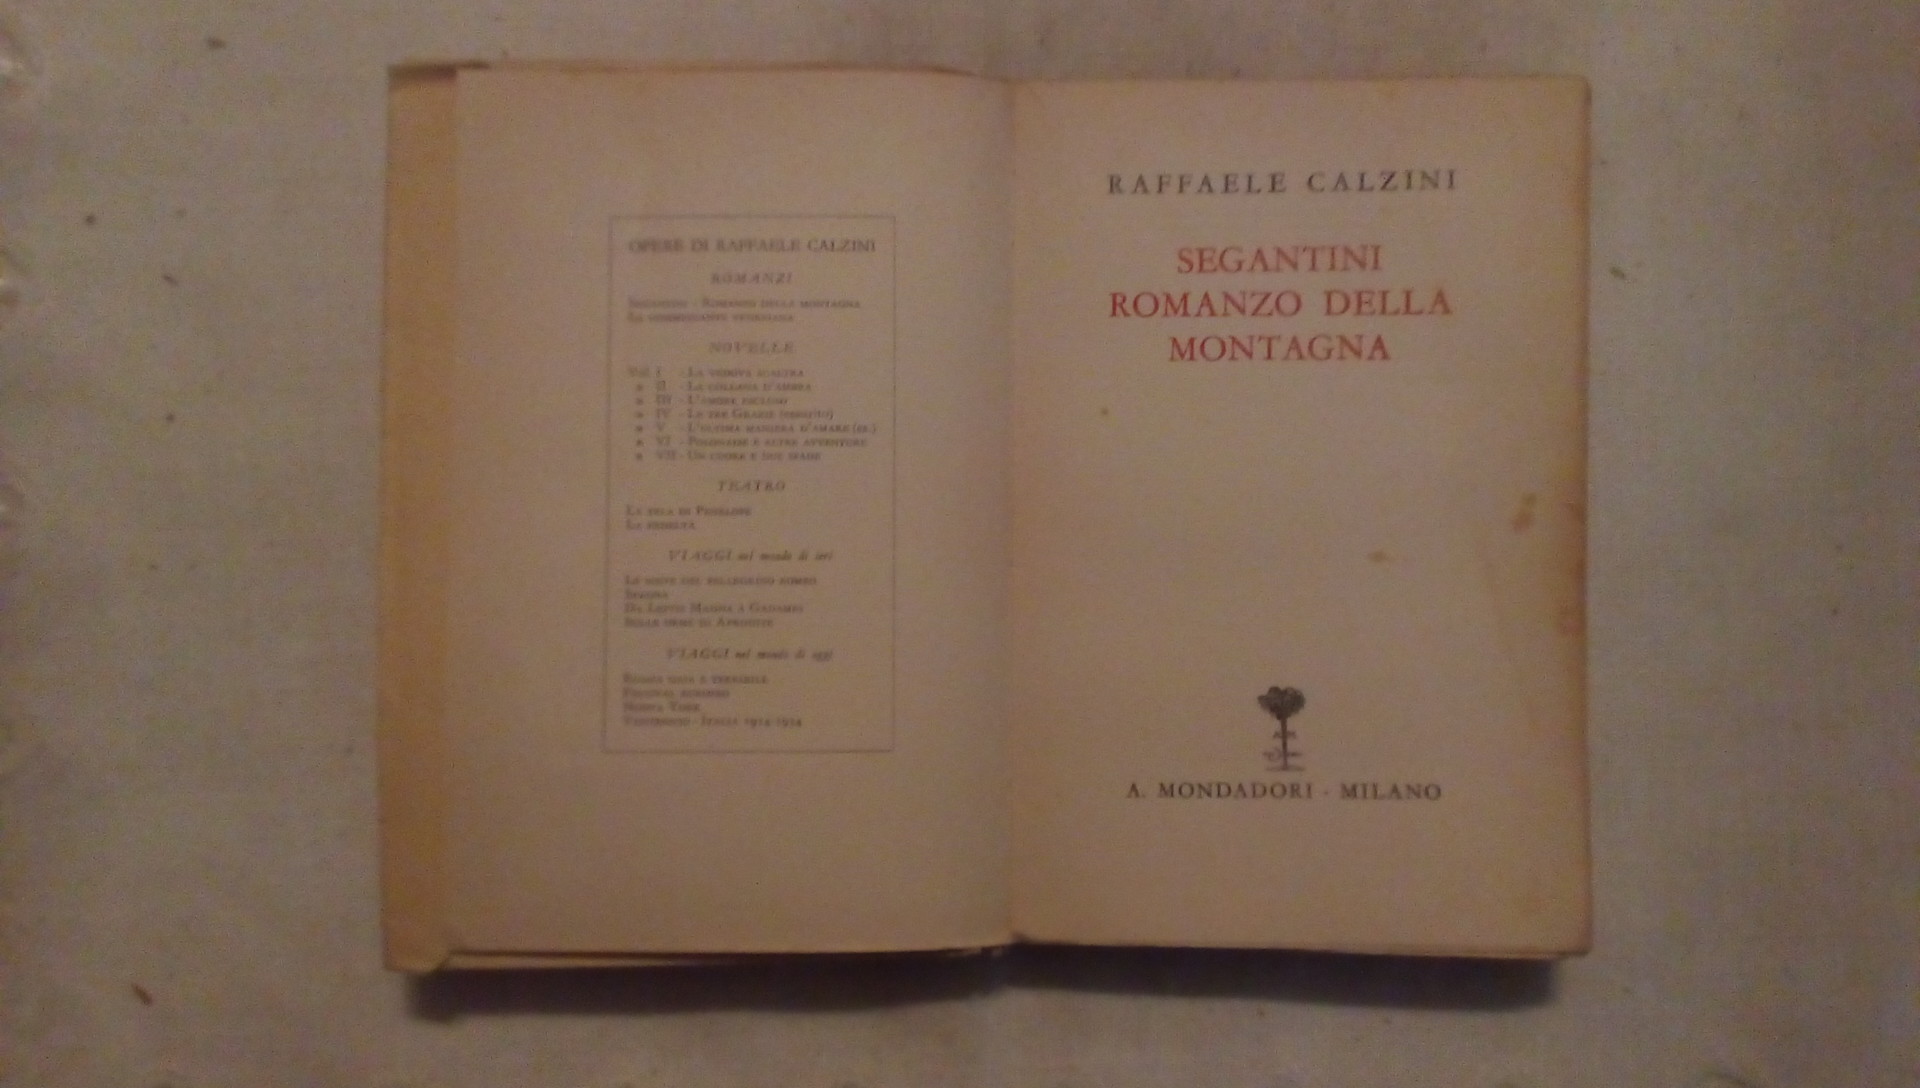 Segantini romanzo della montagna - Raffaele Calzini Mondadori 1937